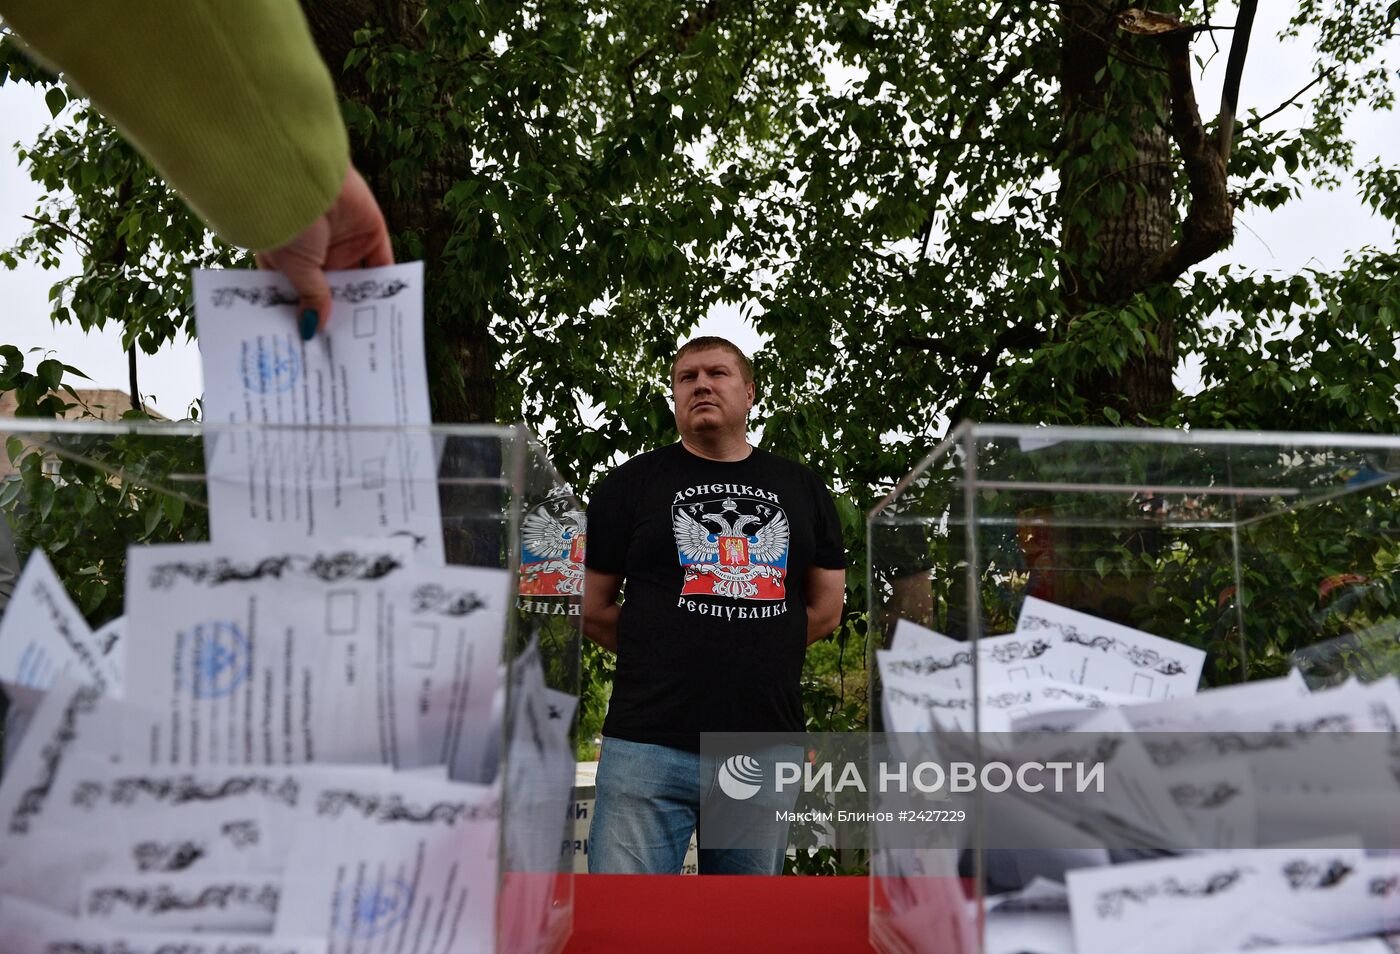 Голосование на референдуме жителей юго-востока Украины в Москве